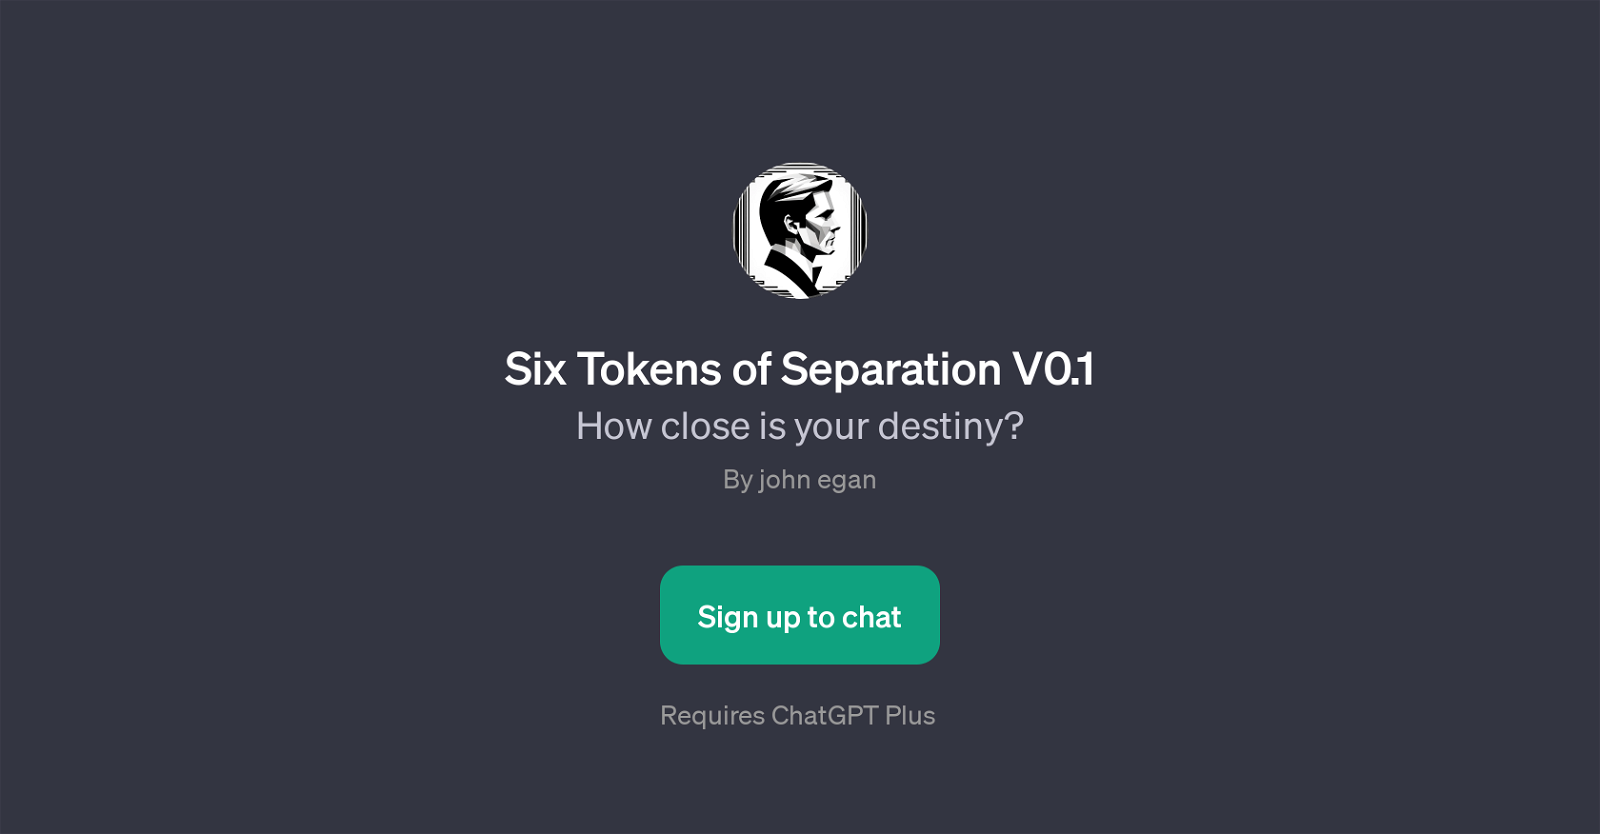 Six Tokens of Separation V0.1 website